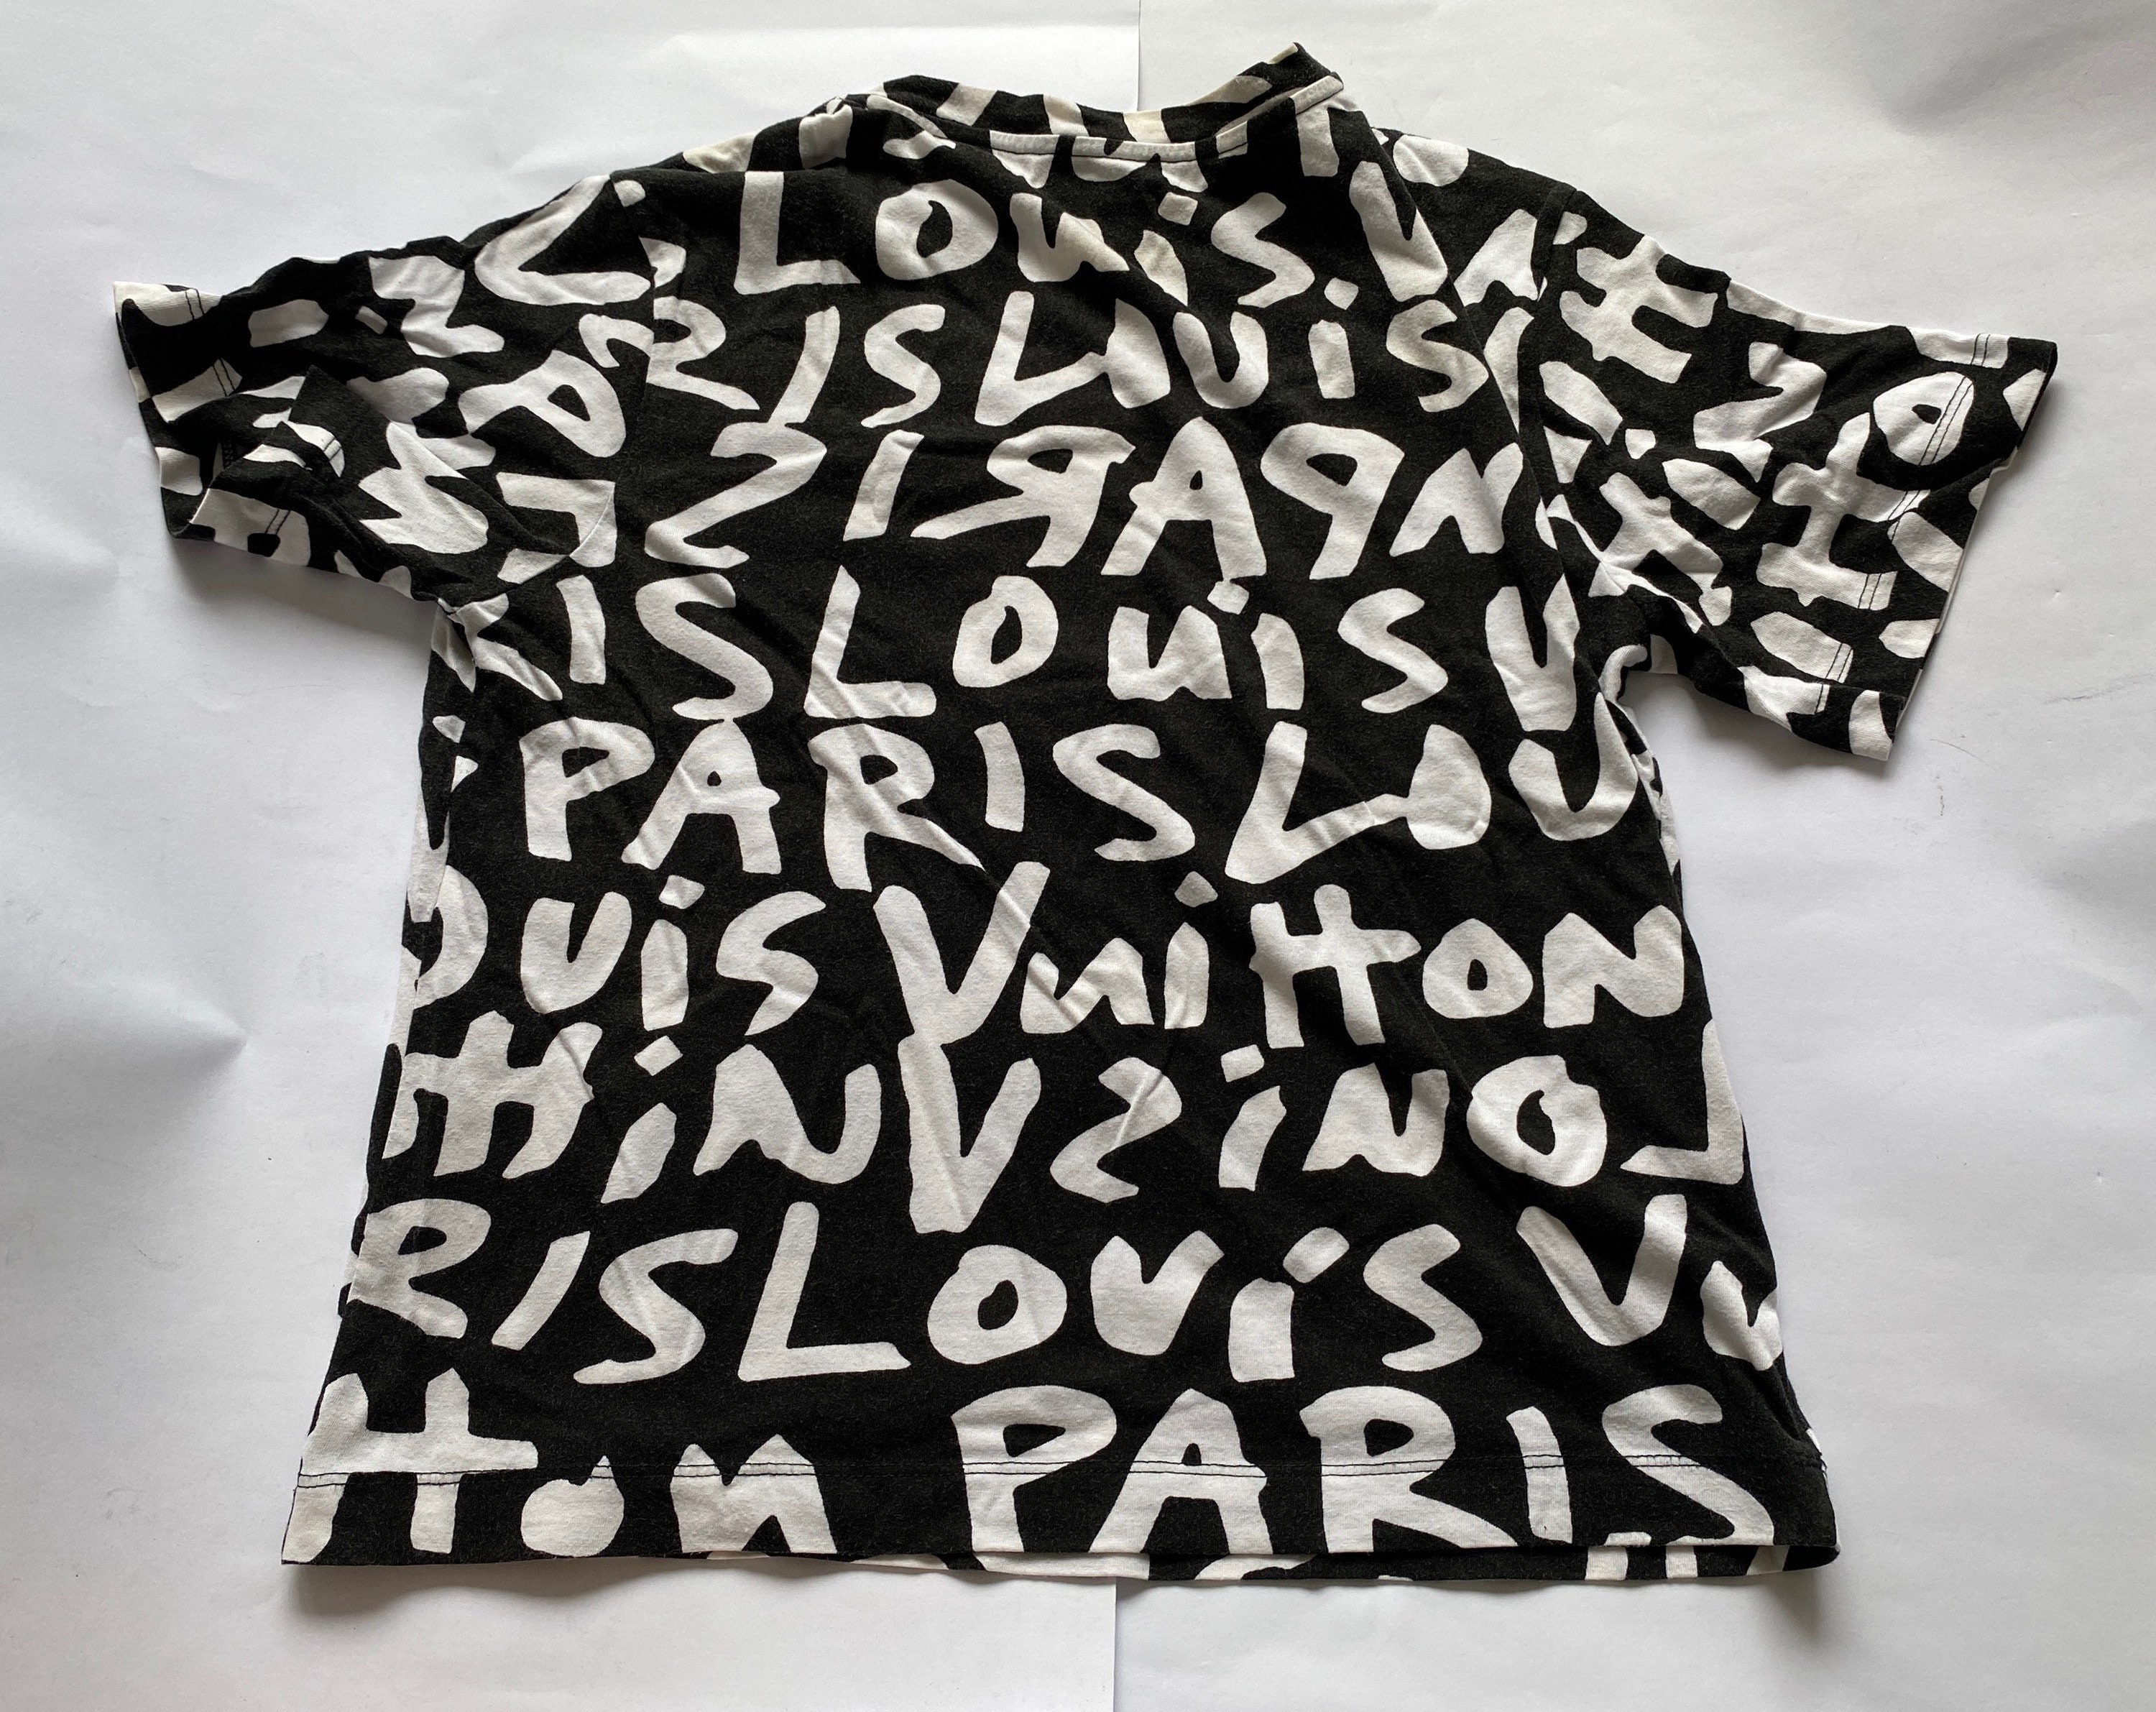 Louis Vuitton 'VUITTON' GRAFFITI T-SHIRT